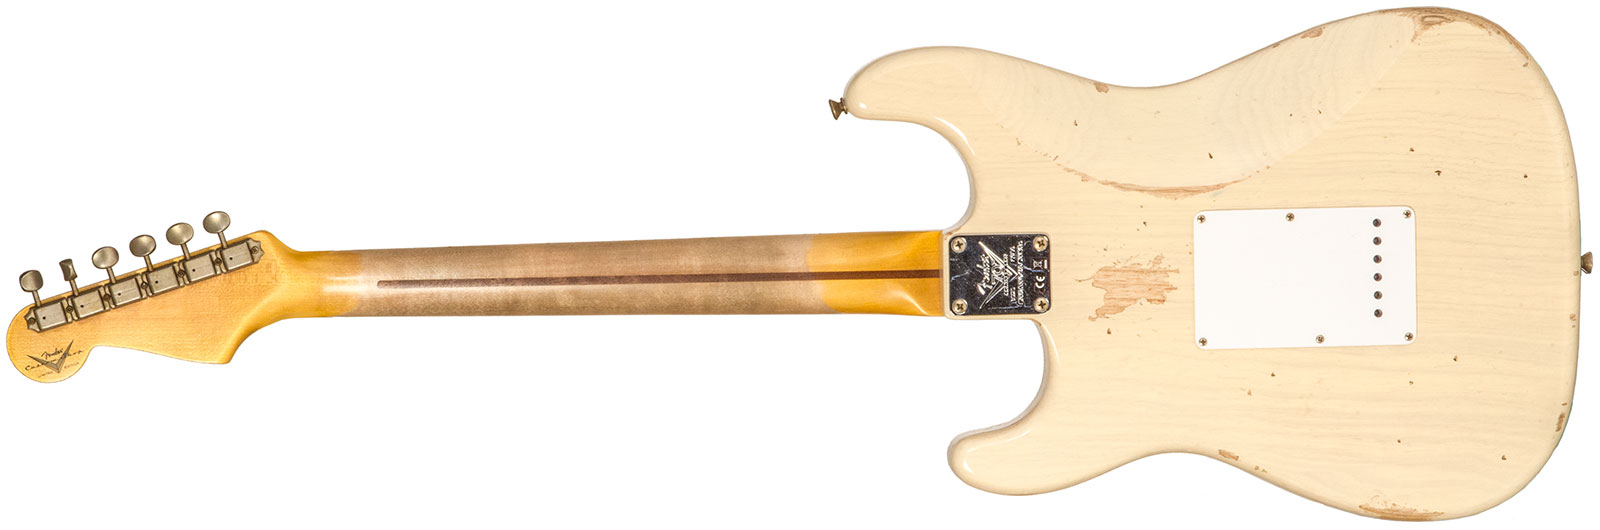 Fender Custom Shop Strat 1954 70th Anniv. 3s Trem Mn #xn4342 - Relic Vintage Blonde - Str shape electric guitar - Variation 1